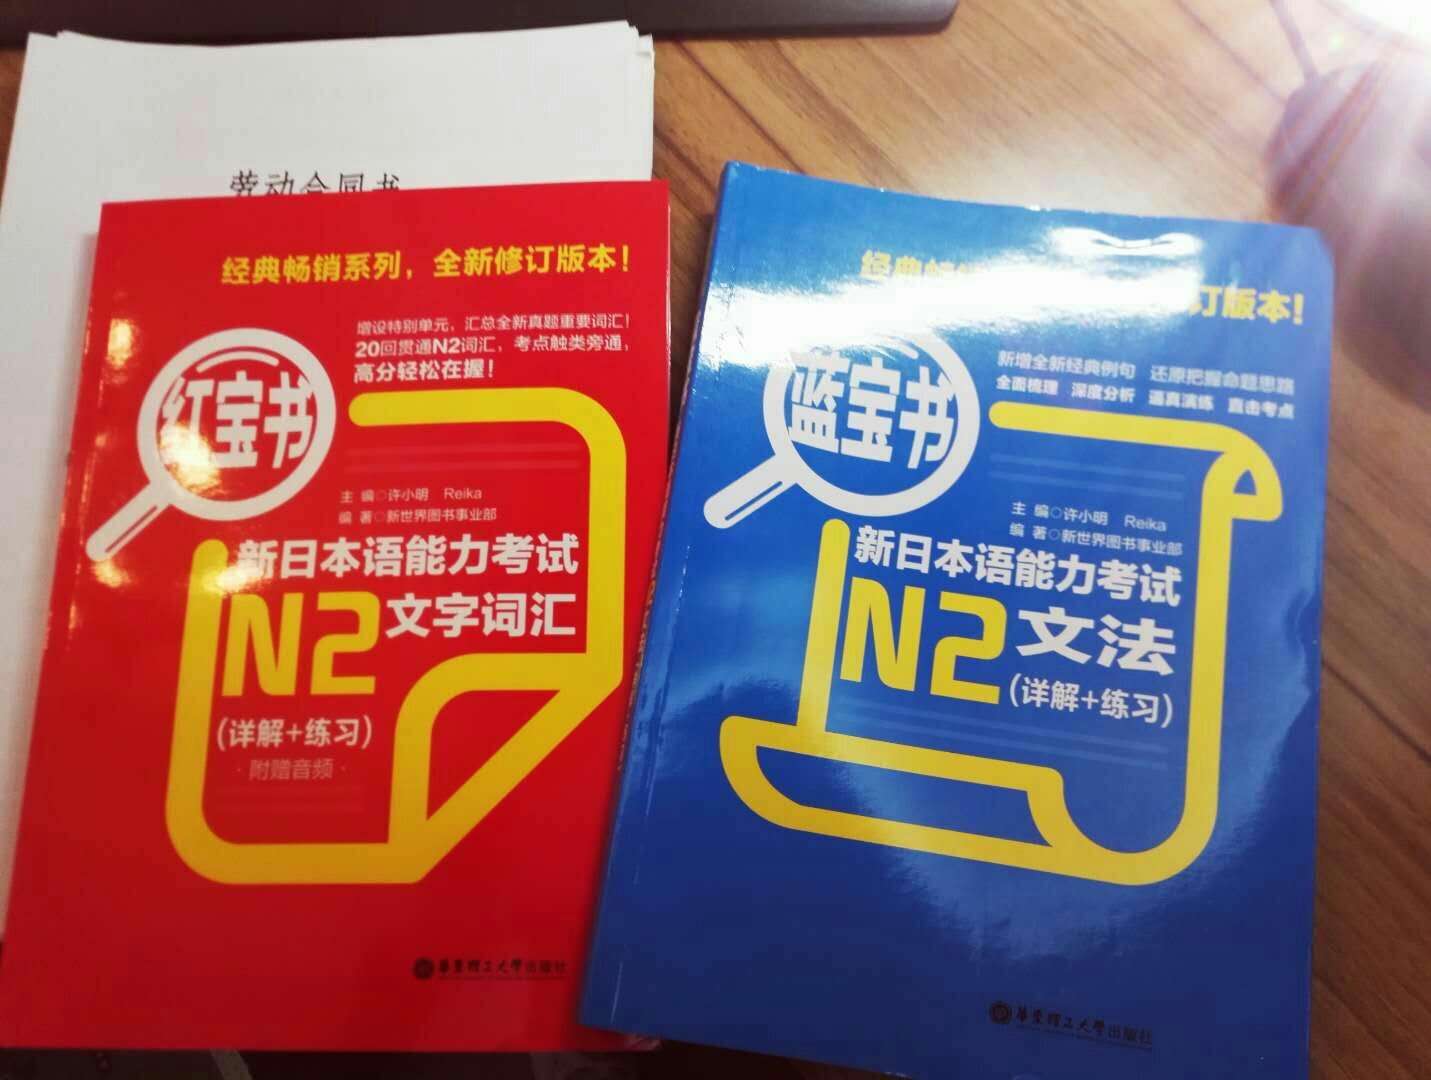 日语专业考级辅助用书。希望有用。